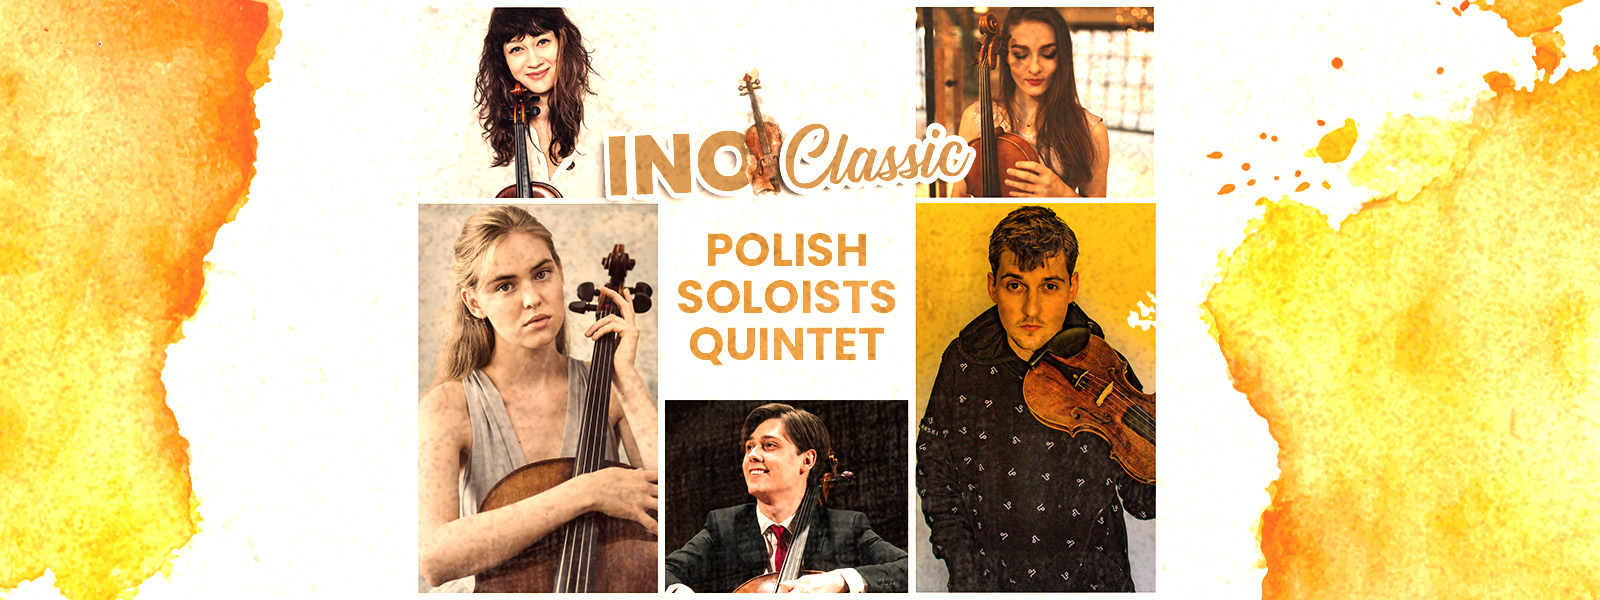 INO CLASSIC FESTIWAL. Polish Soloists Quintet